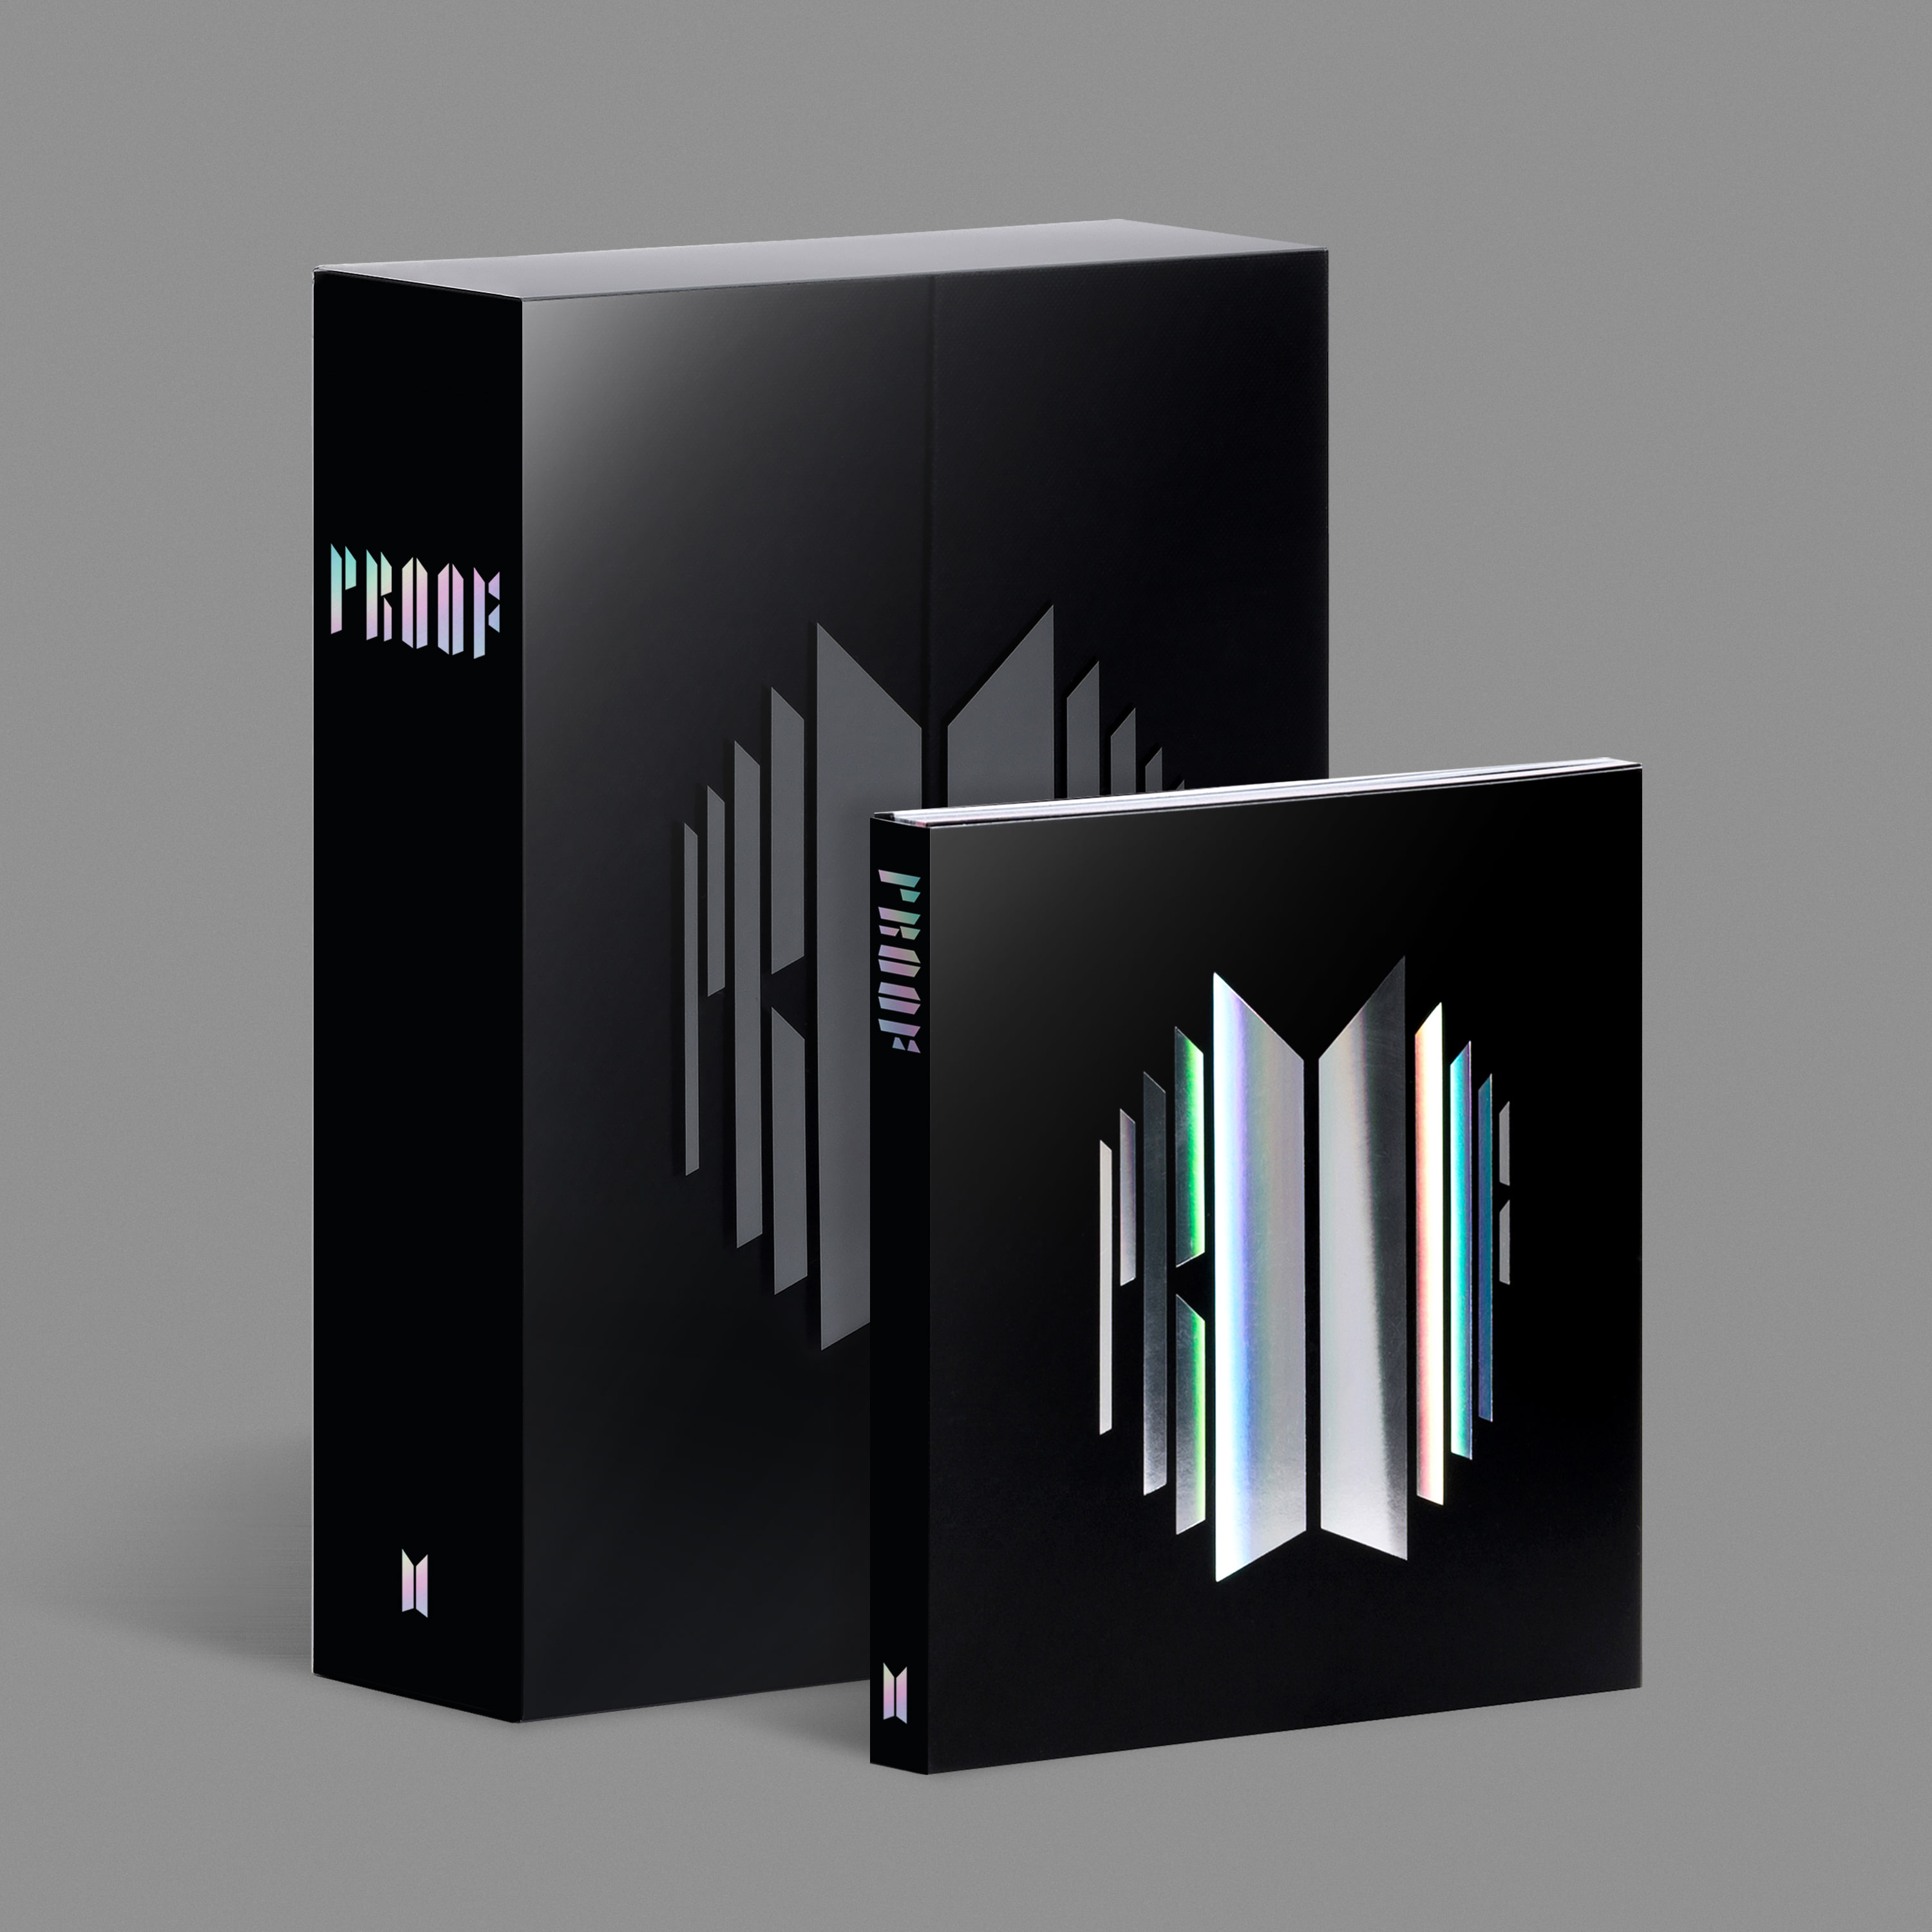 방탄소년단 (BTS) - Proof (Standard Edition + Compact Edition)케이팝스토어(kpop store)